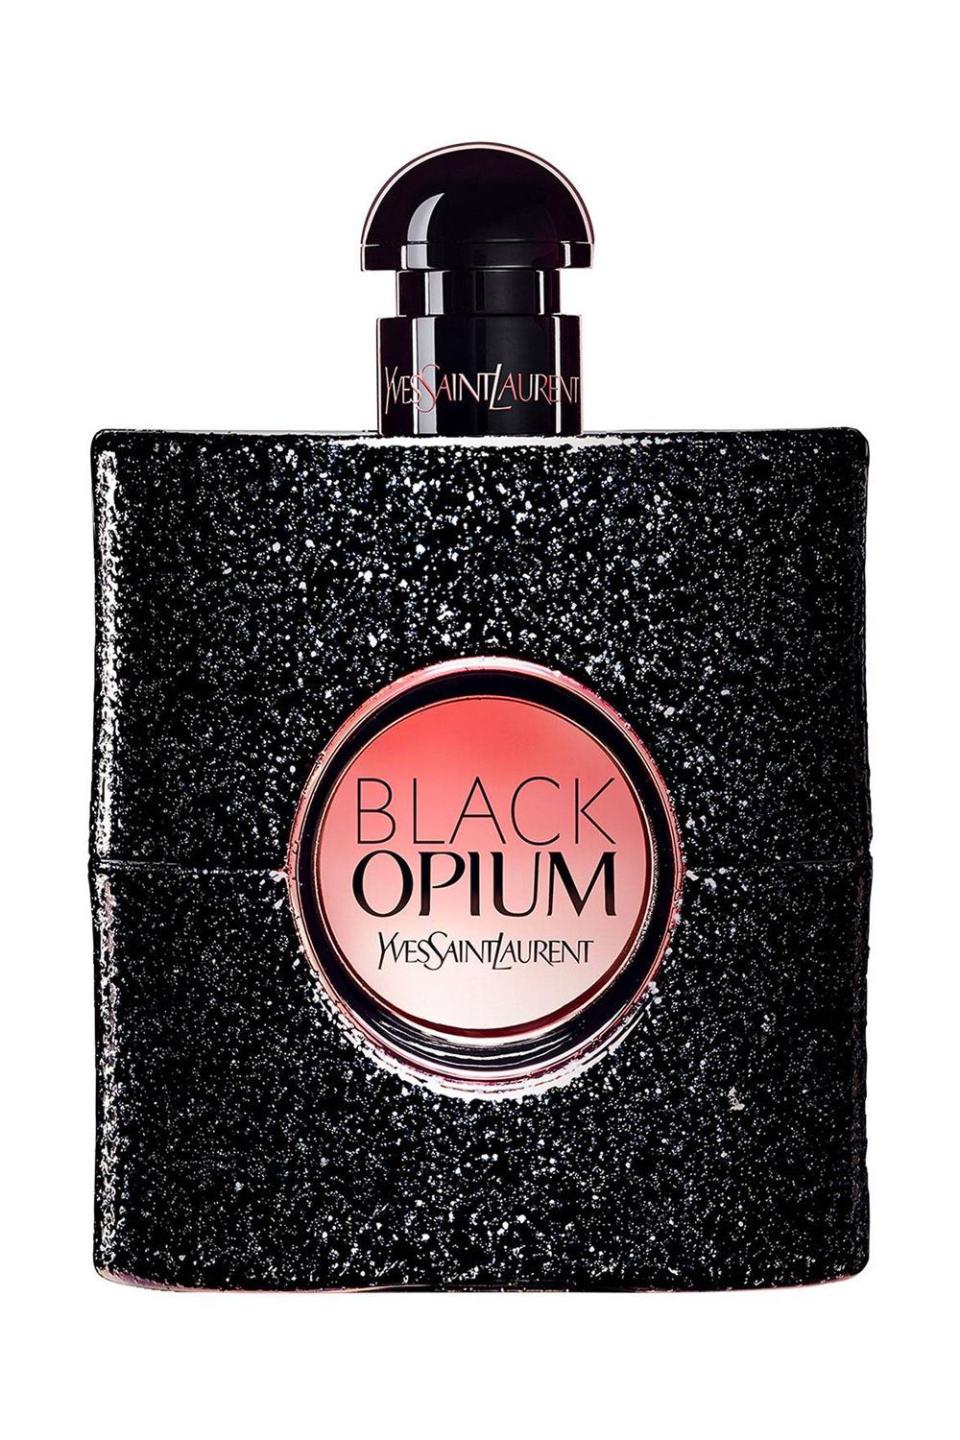 14) Yves Saint Laurent Black Opium Eau de Parfum